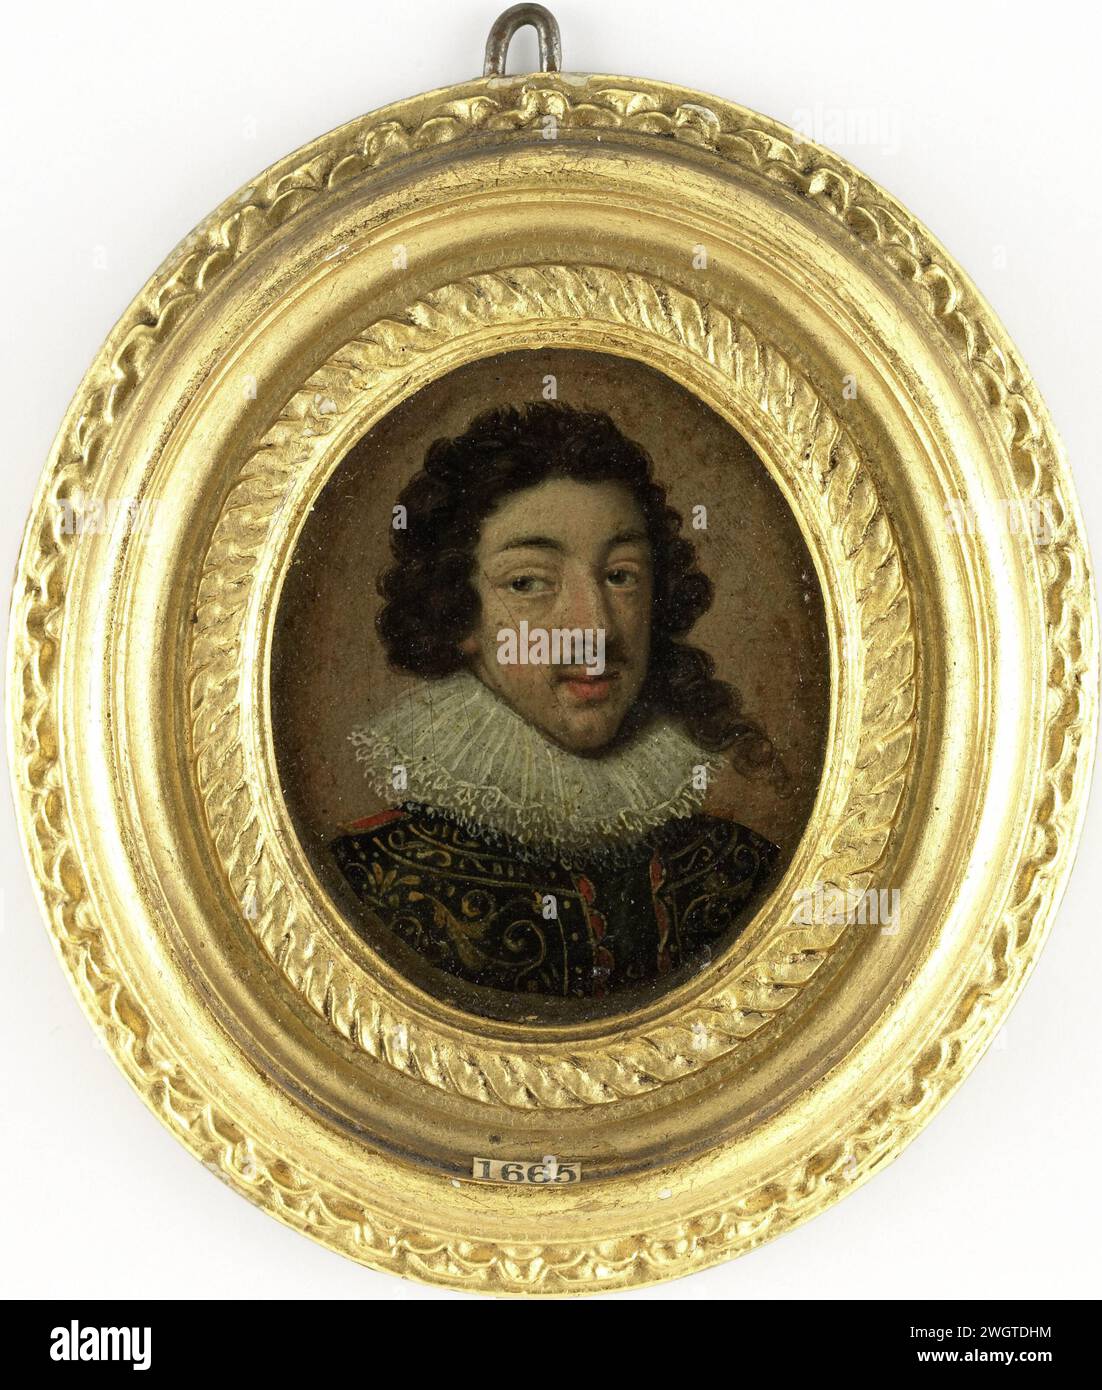 Louis XIII (1601-43), roi de France, anonyme, v. 1625 miniature (peinture) Portrait de Louis XIII (1601-43), roi de France. Buste à droite, les yeux à gauche. Au portrait de Rubens dans la Fondation Norton Simon à Pasadena. J'étais interprété comme un portrait de Frédéric V (1596-1632), électeur du Palatinat, roi de Bohême. Fait partie de la collection de portraits miniatures. Cuivre (métal) du nord des pays-Bas. peinture à l'huile (peinture). bois (matériel végétal) personnes historiques Banque D'Images